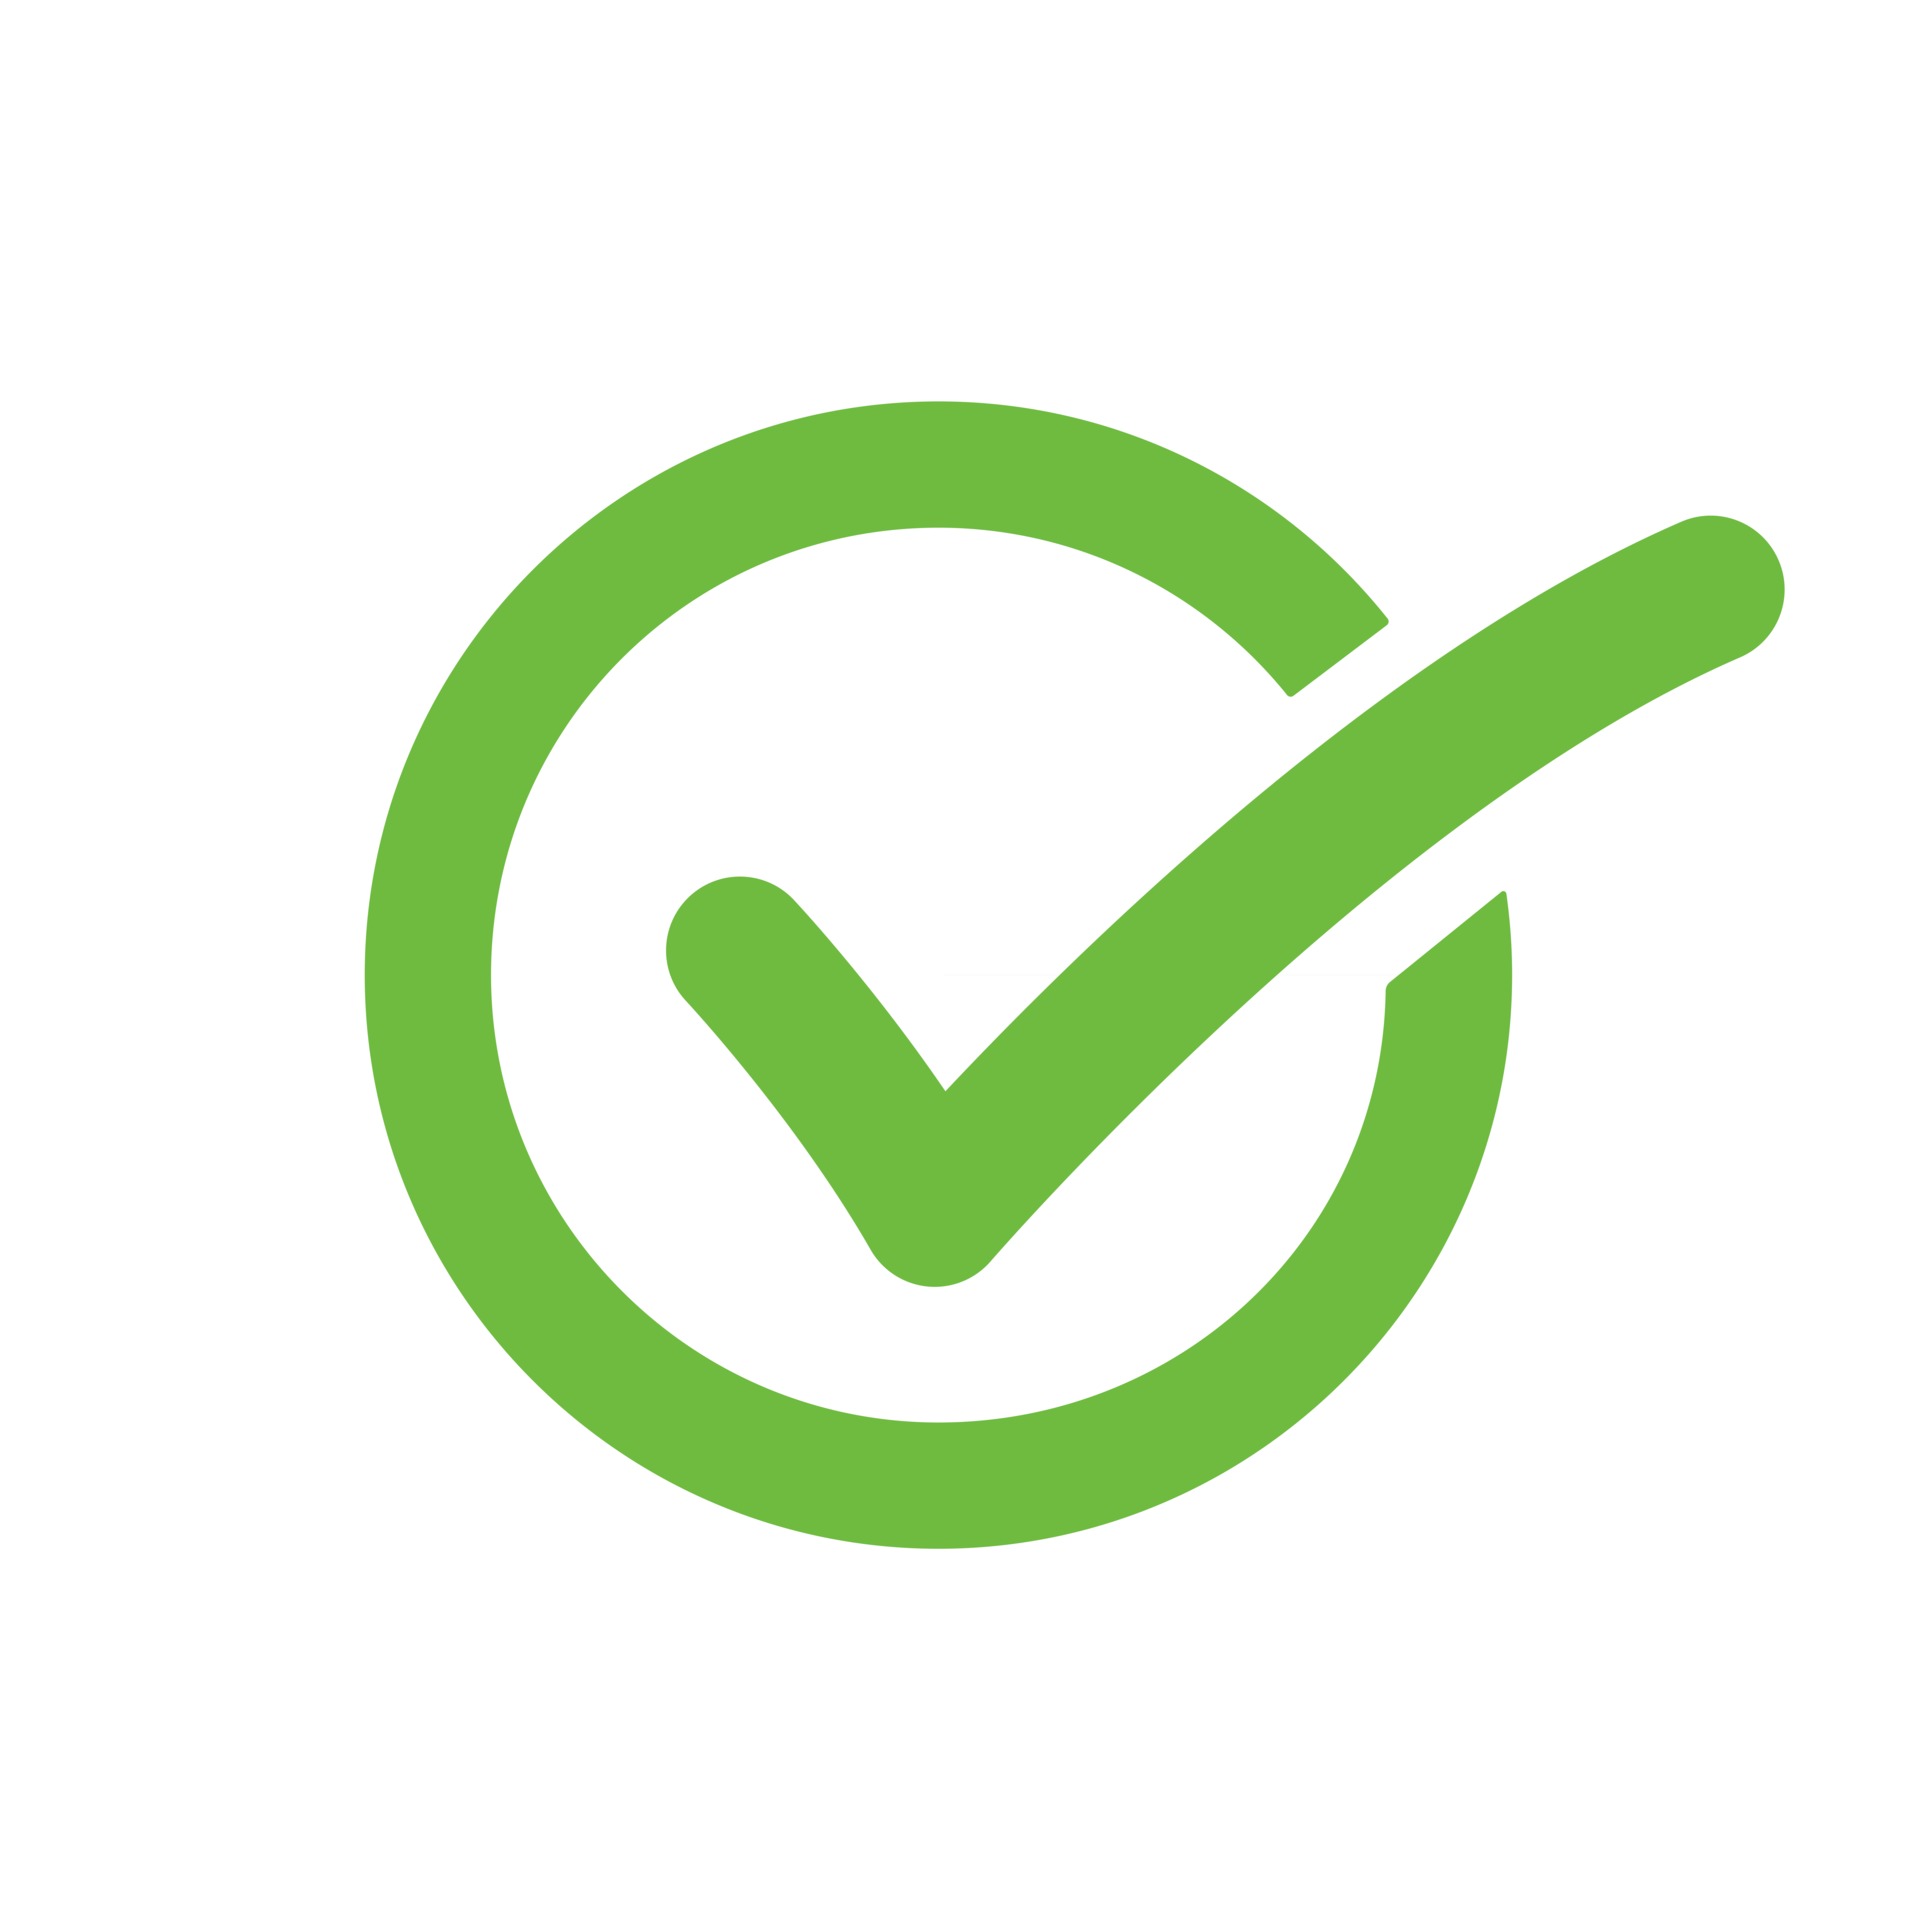 Green check mark icon in a circle 2743514 Vector Art at Vecteezy